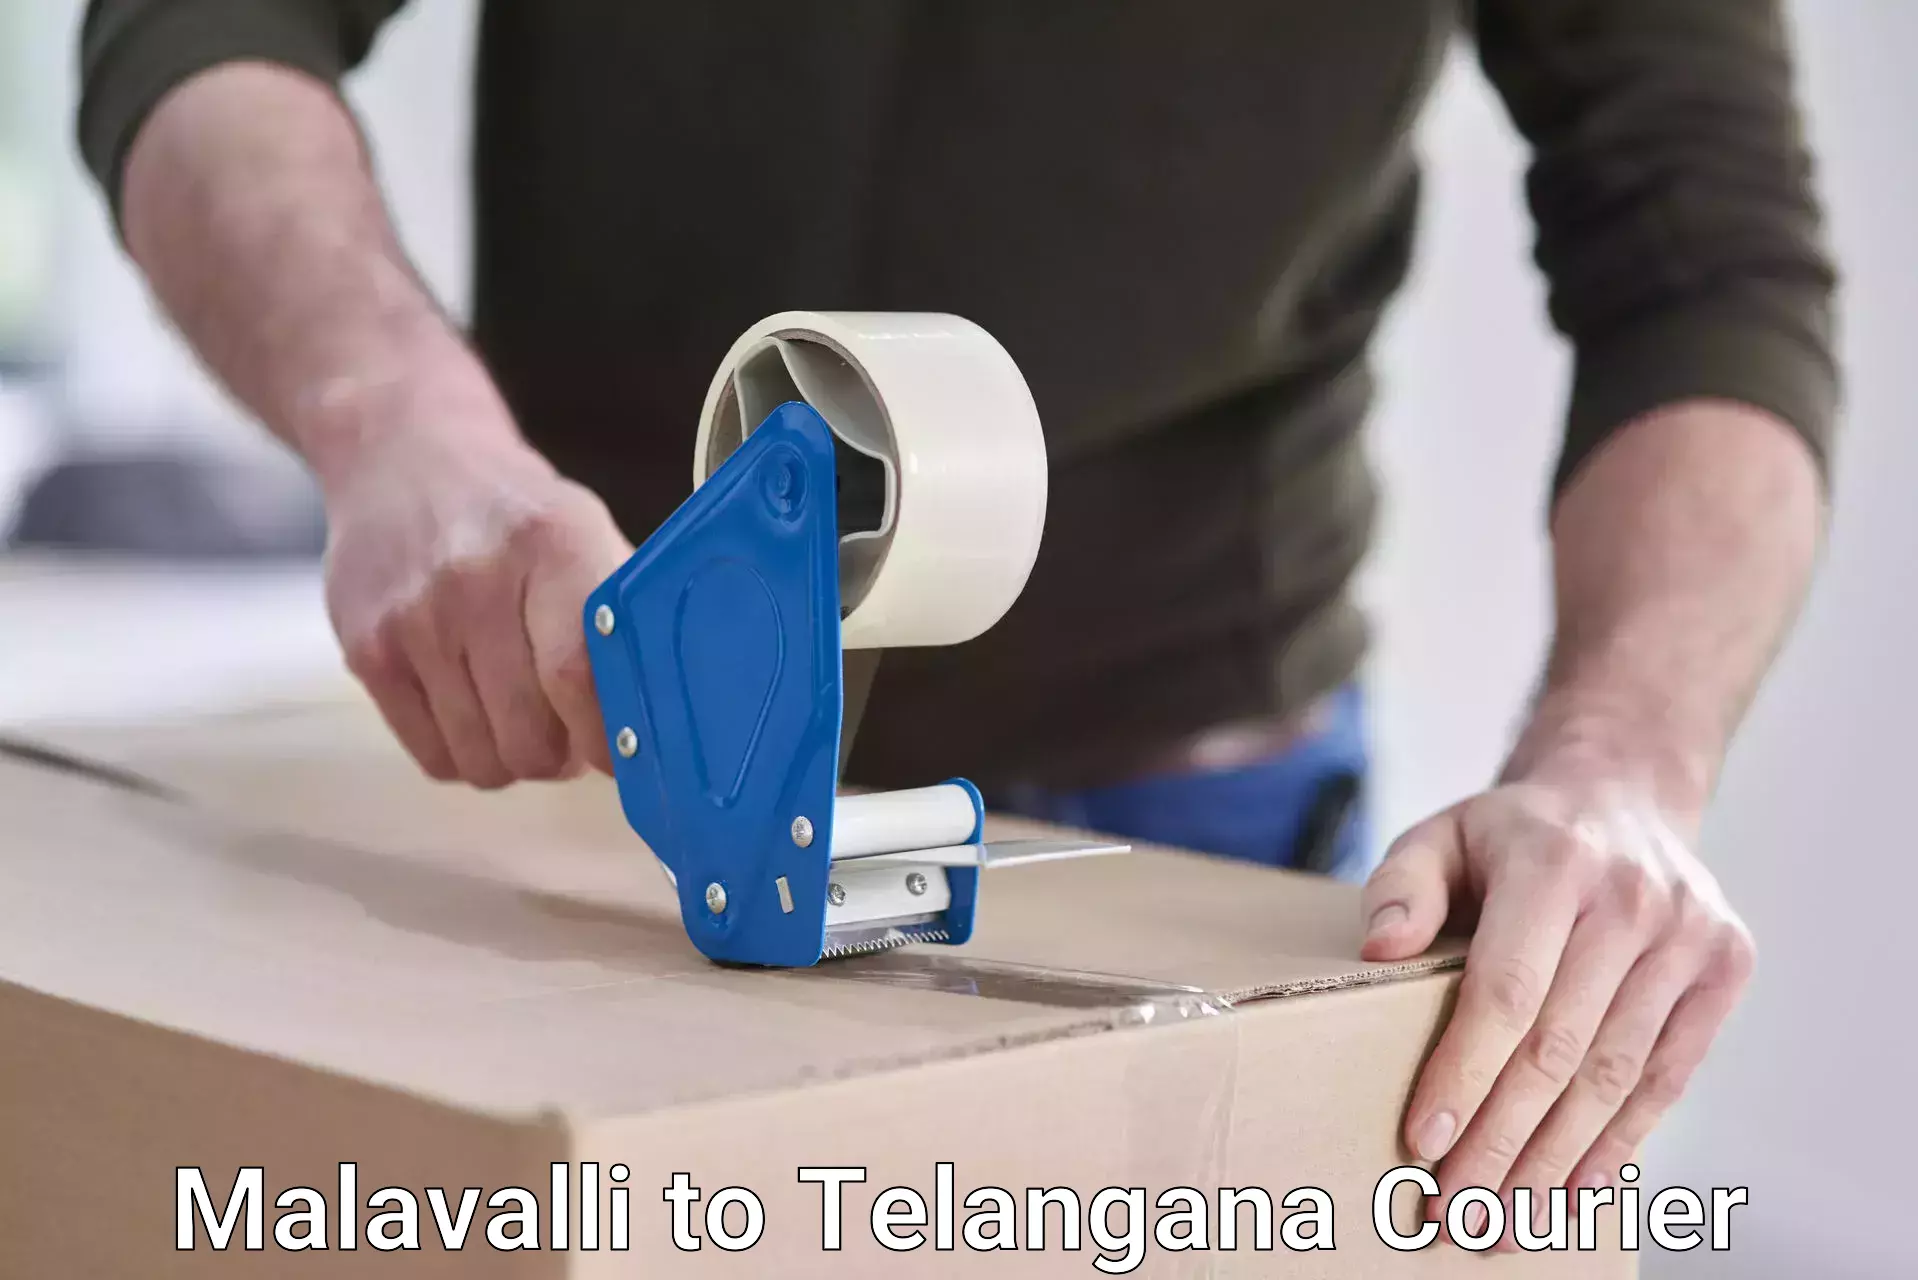 Modern courier technology Malavalli to Pathipaka